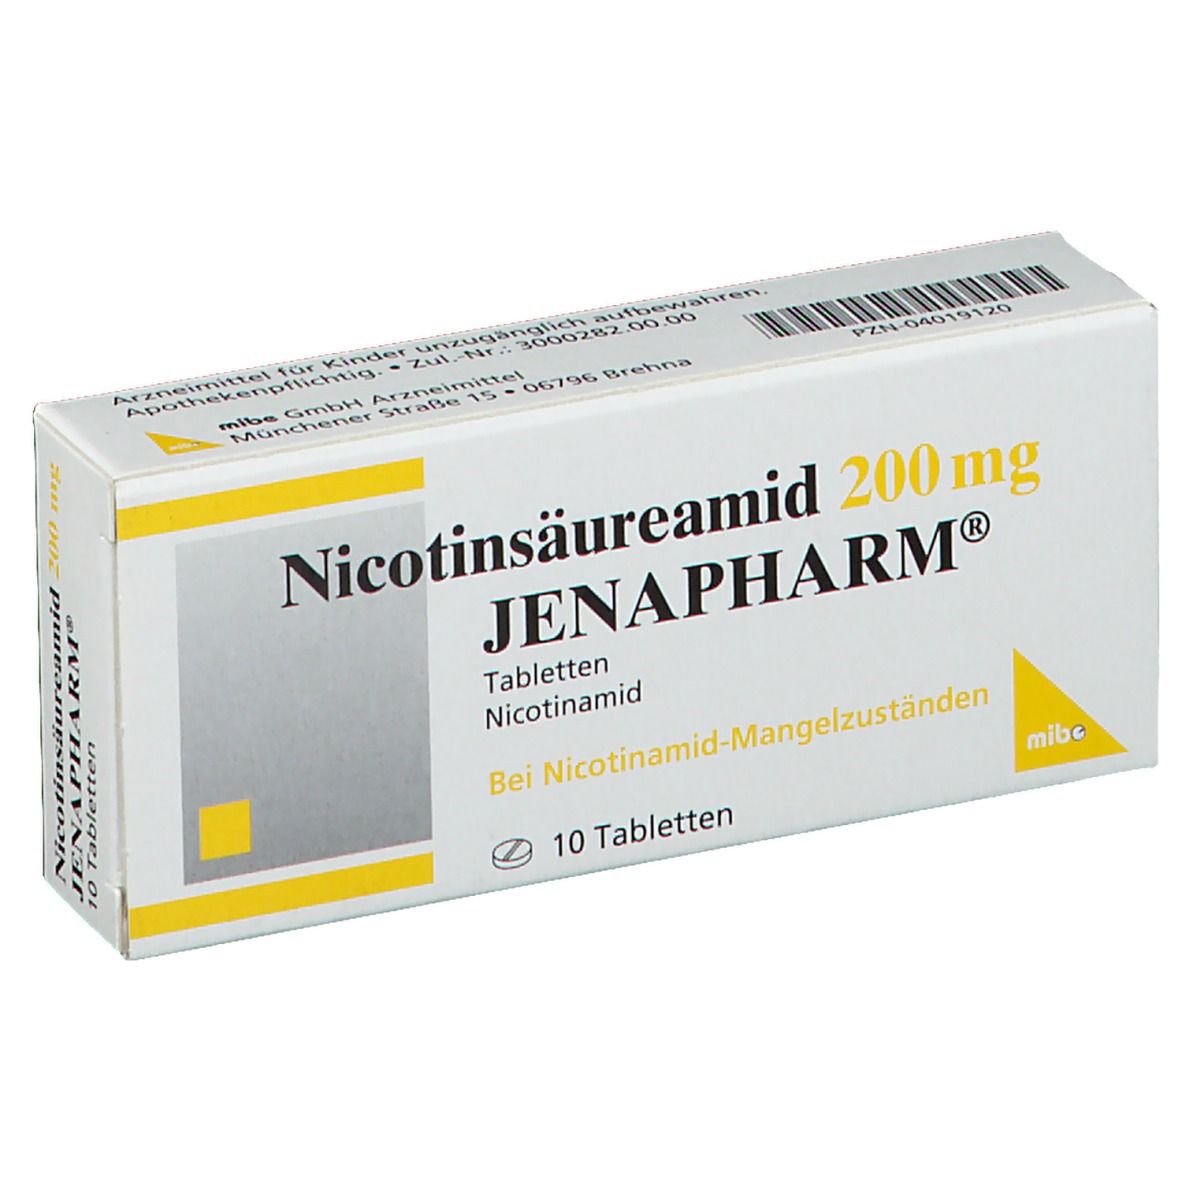 Nicotinsäureamid 200 mg JENAPHARM®